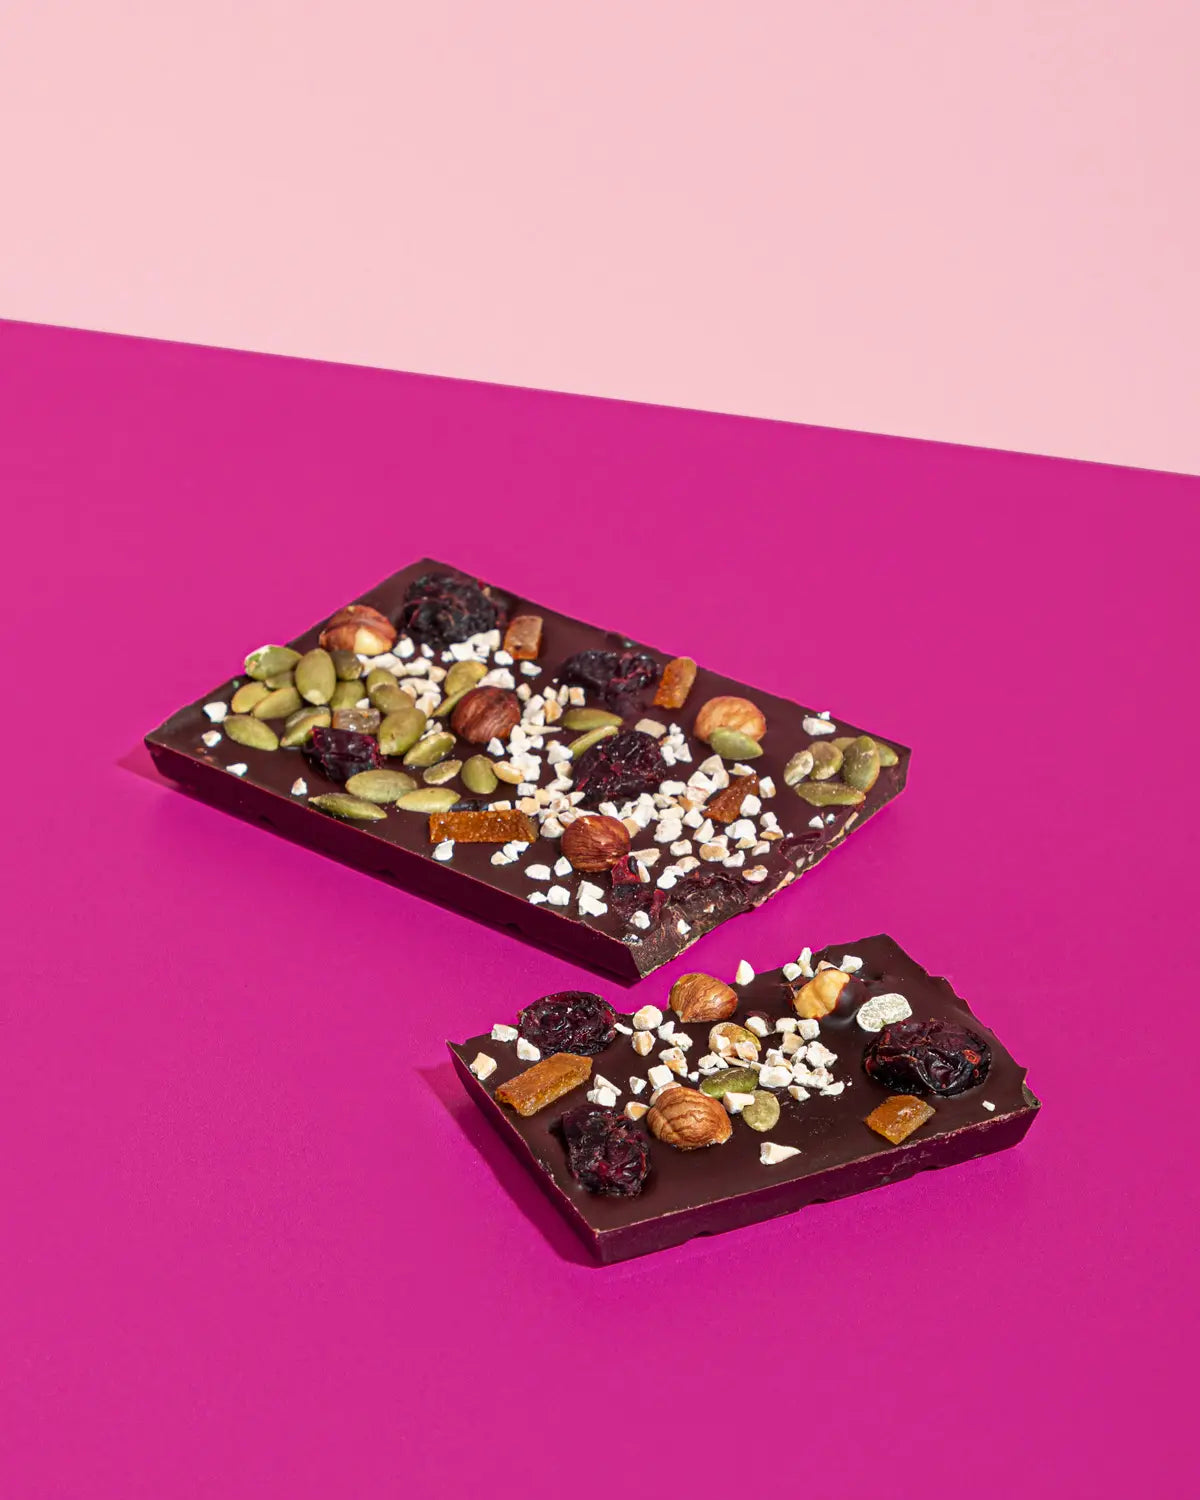 Alex-platel-tablette-chocolat-noir-fruits-noix